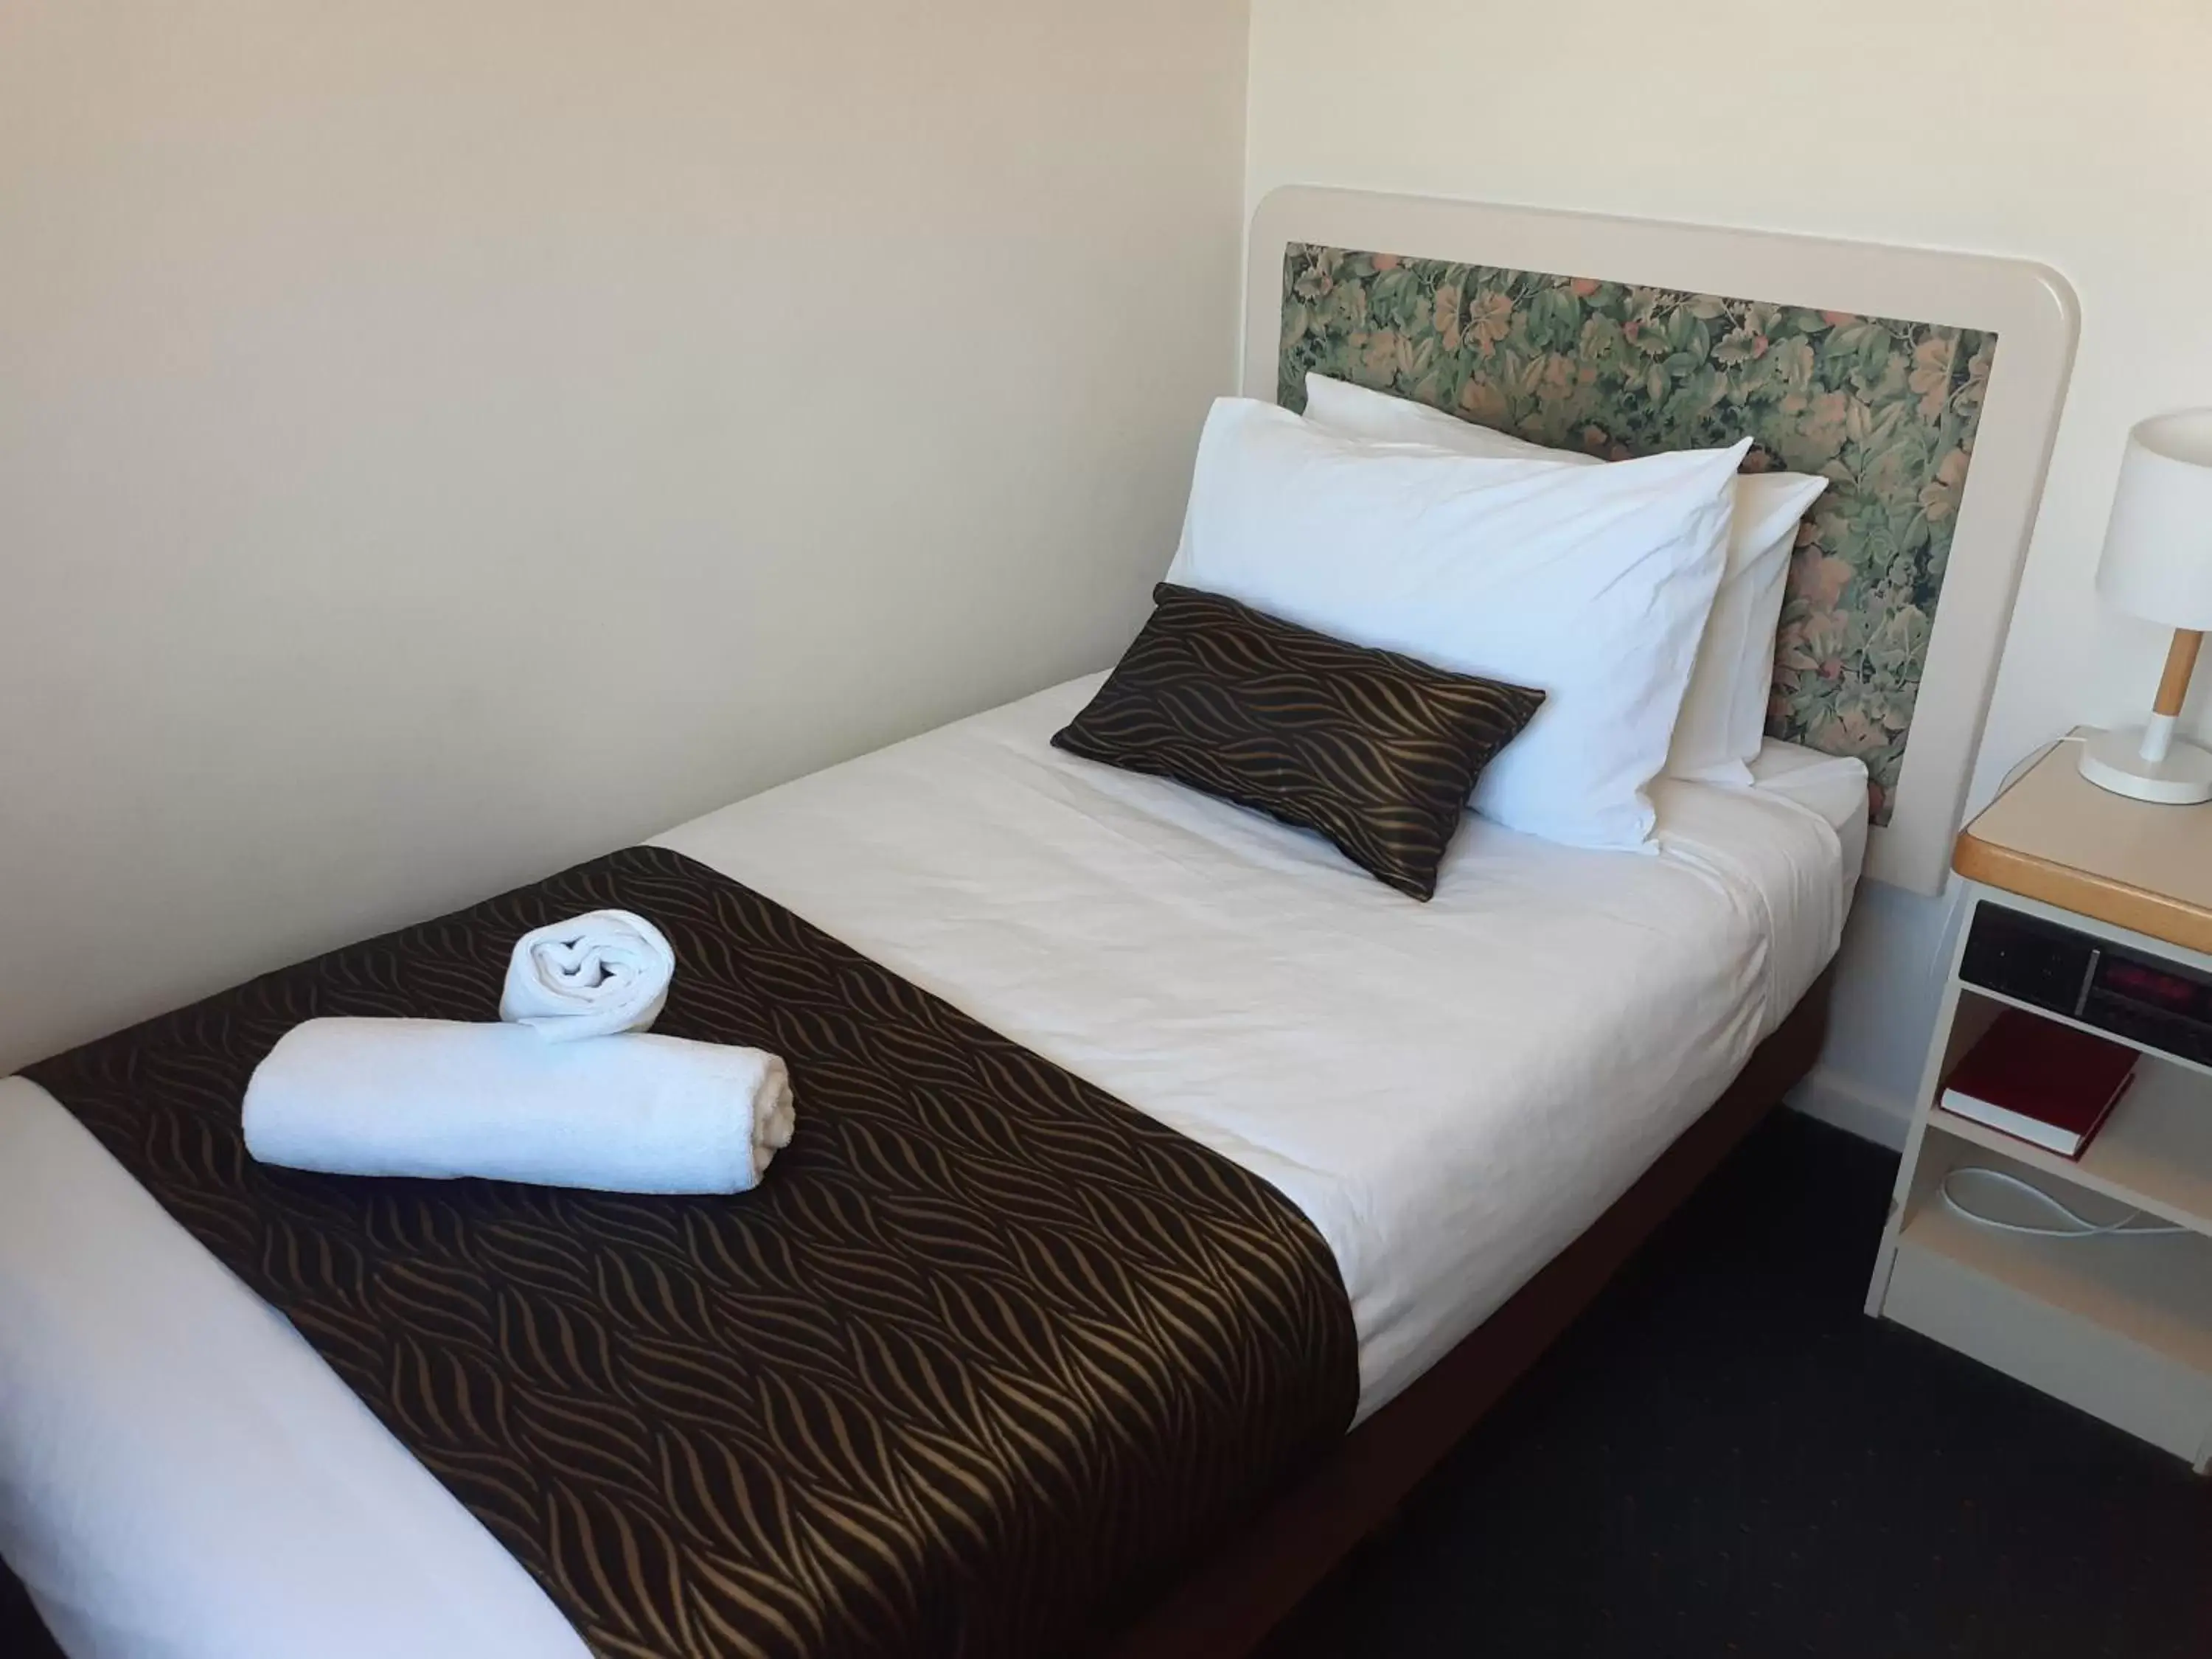 Bed, Room Photo in Crest Motor Inn